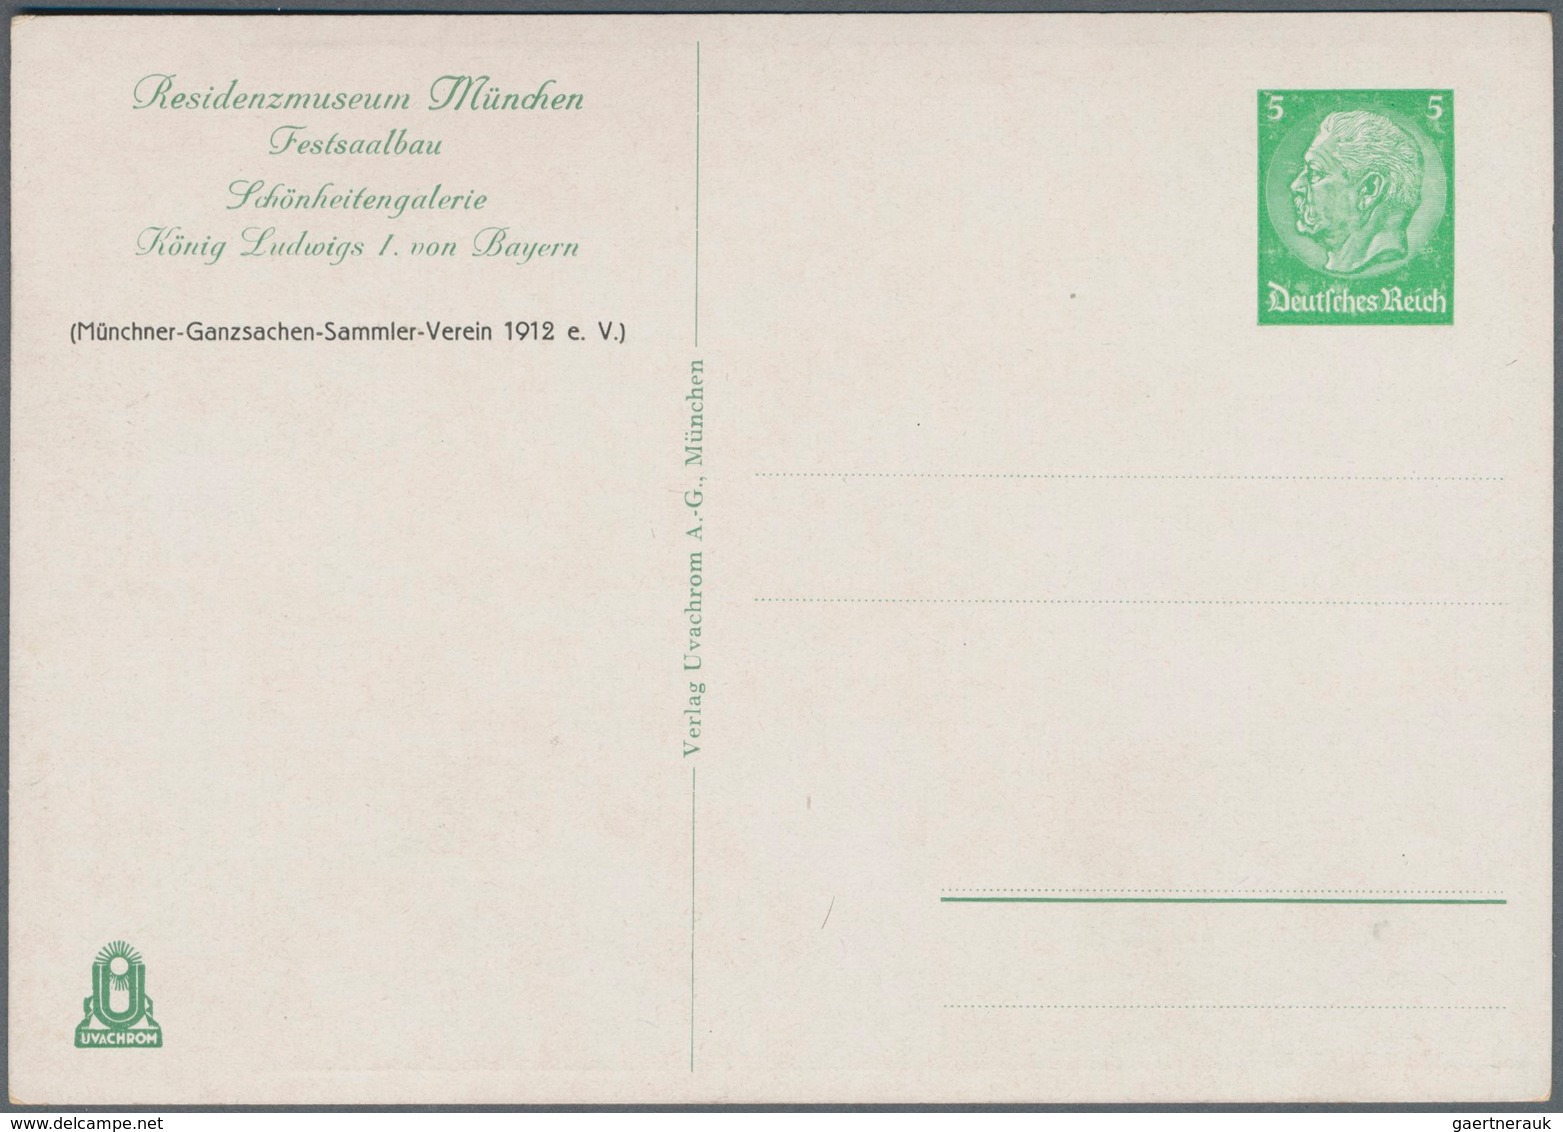 Deutsches Reich - Privatganzsachen: 1935. Schönheitengalerie König Ludwigs I. von Bayern. Kpl. Set v